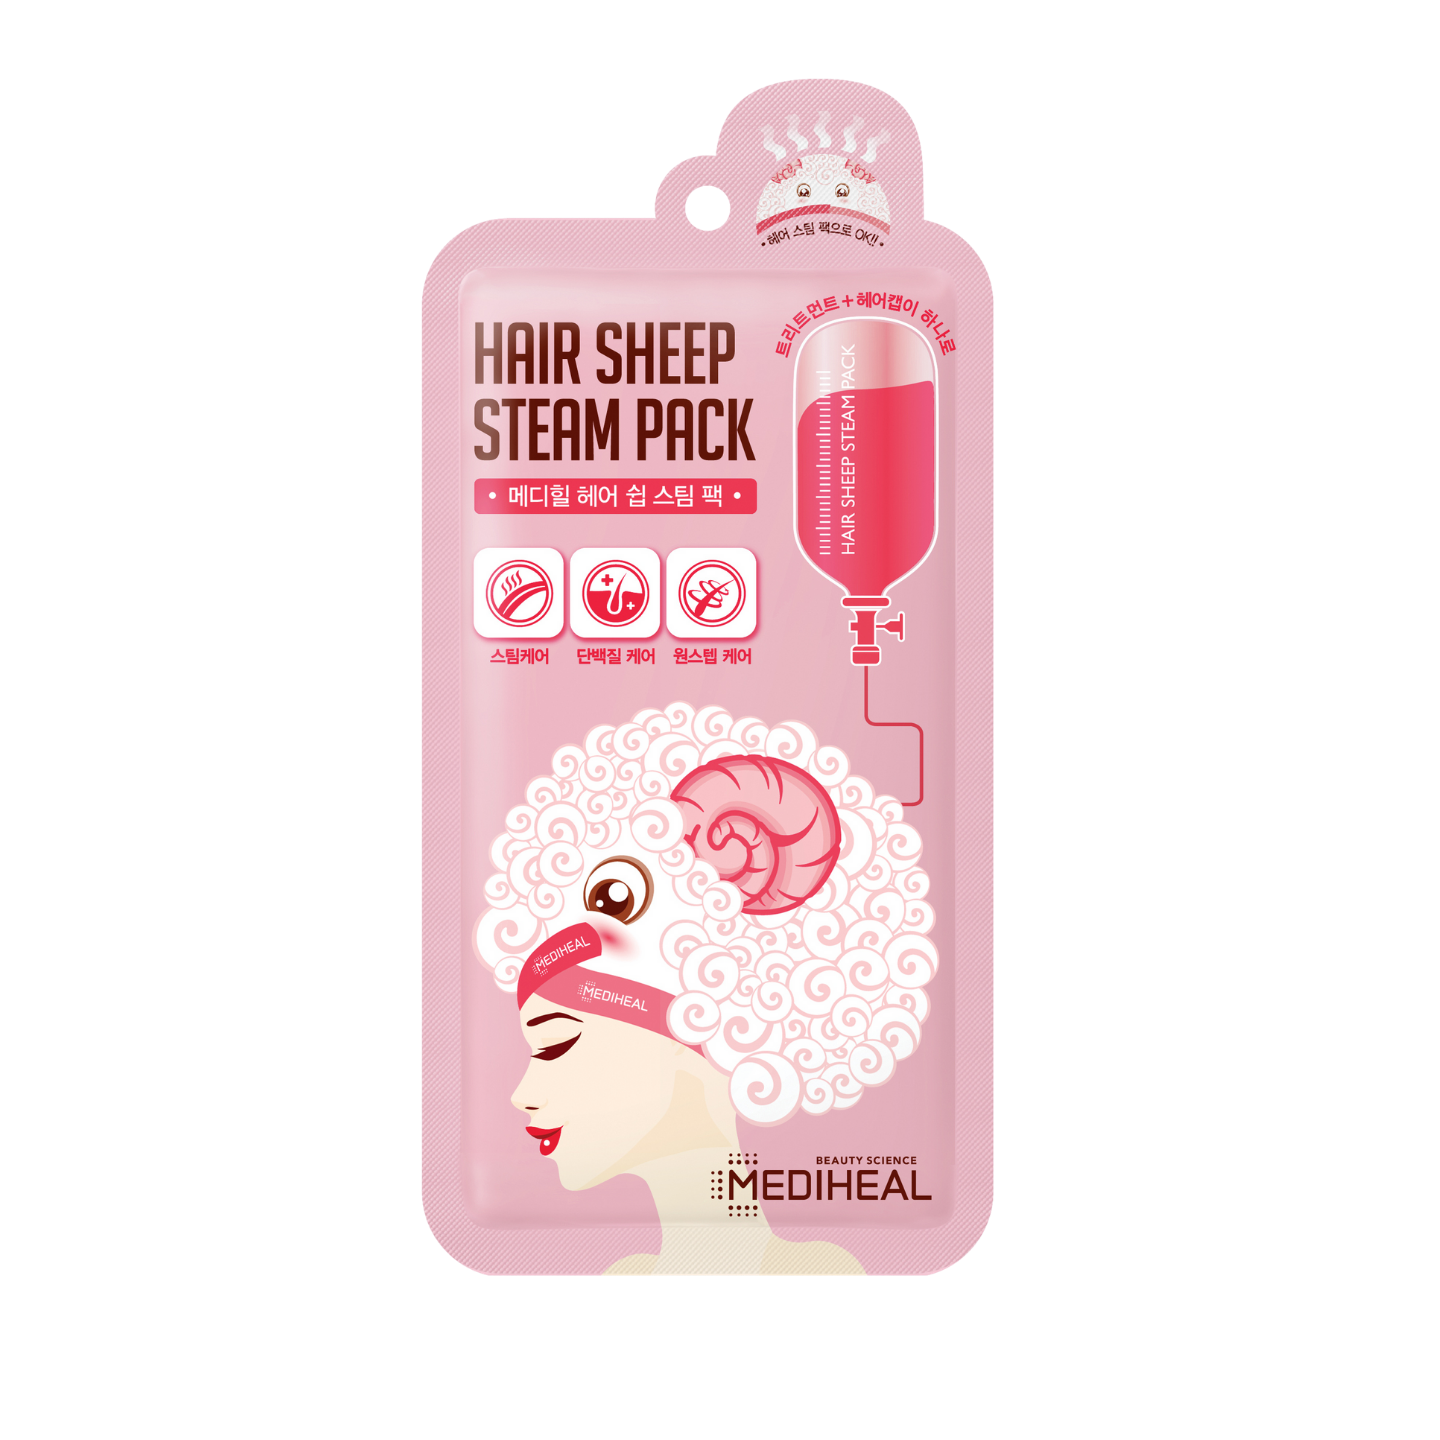 Hair Sheep Steam Pack - Plump Shop